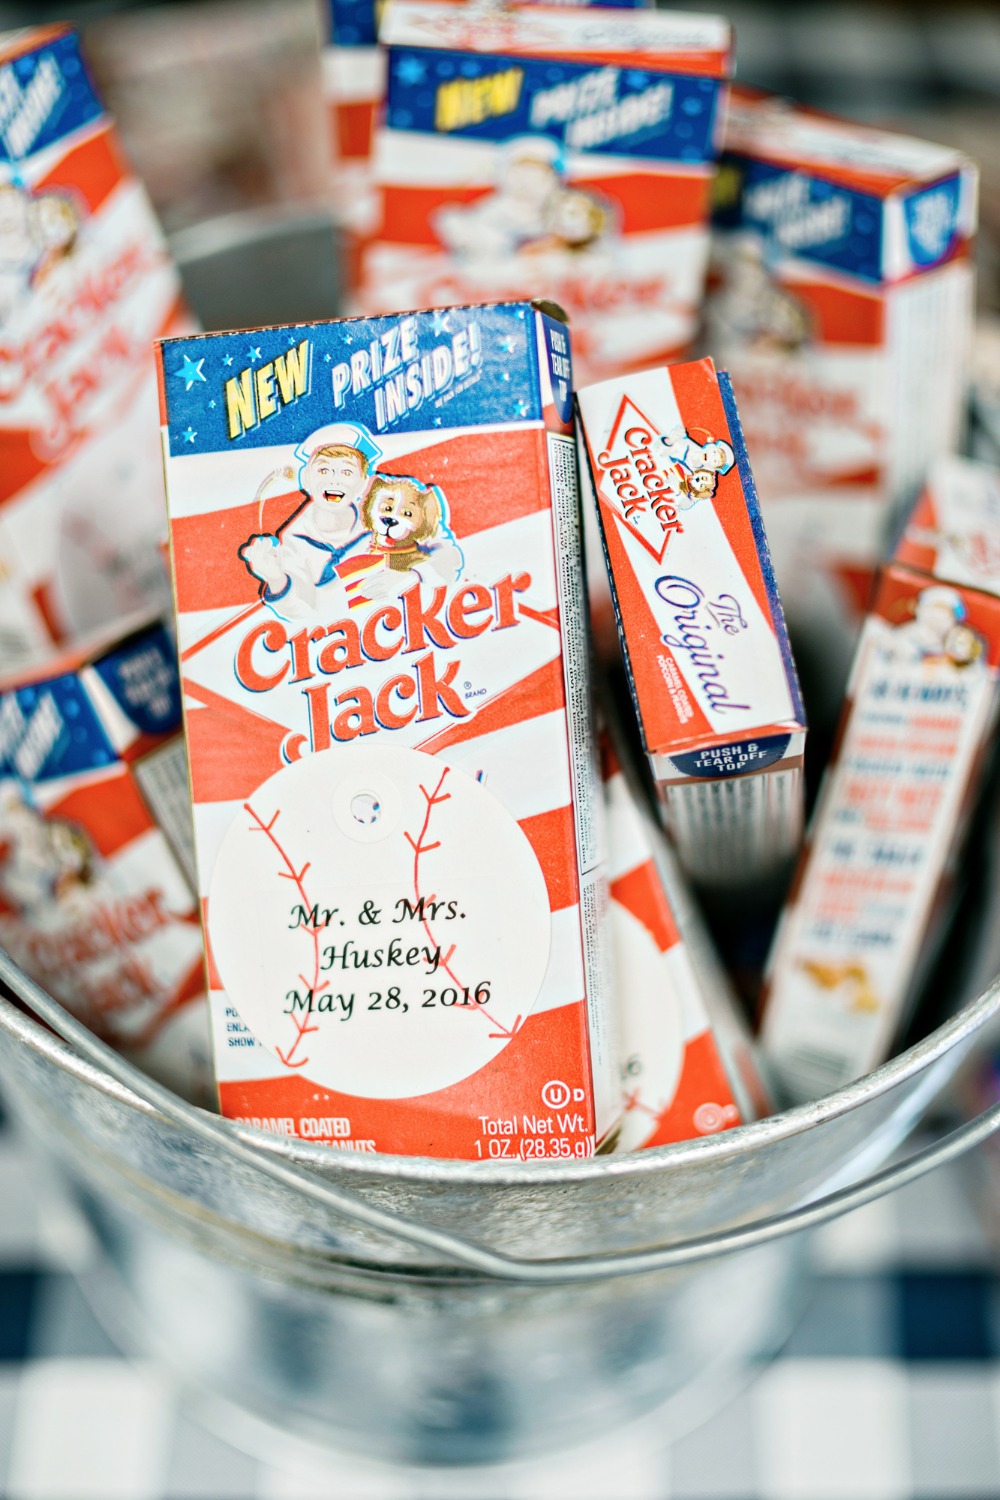 Baseball themed wedding favor - cracker jacks!